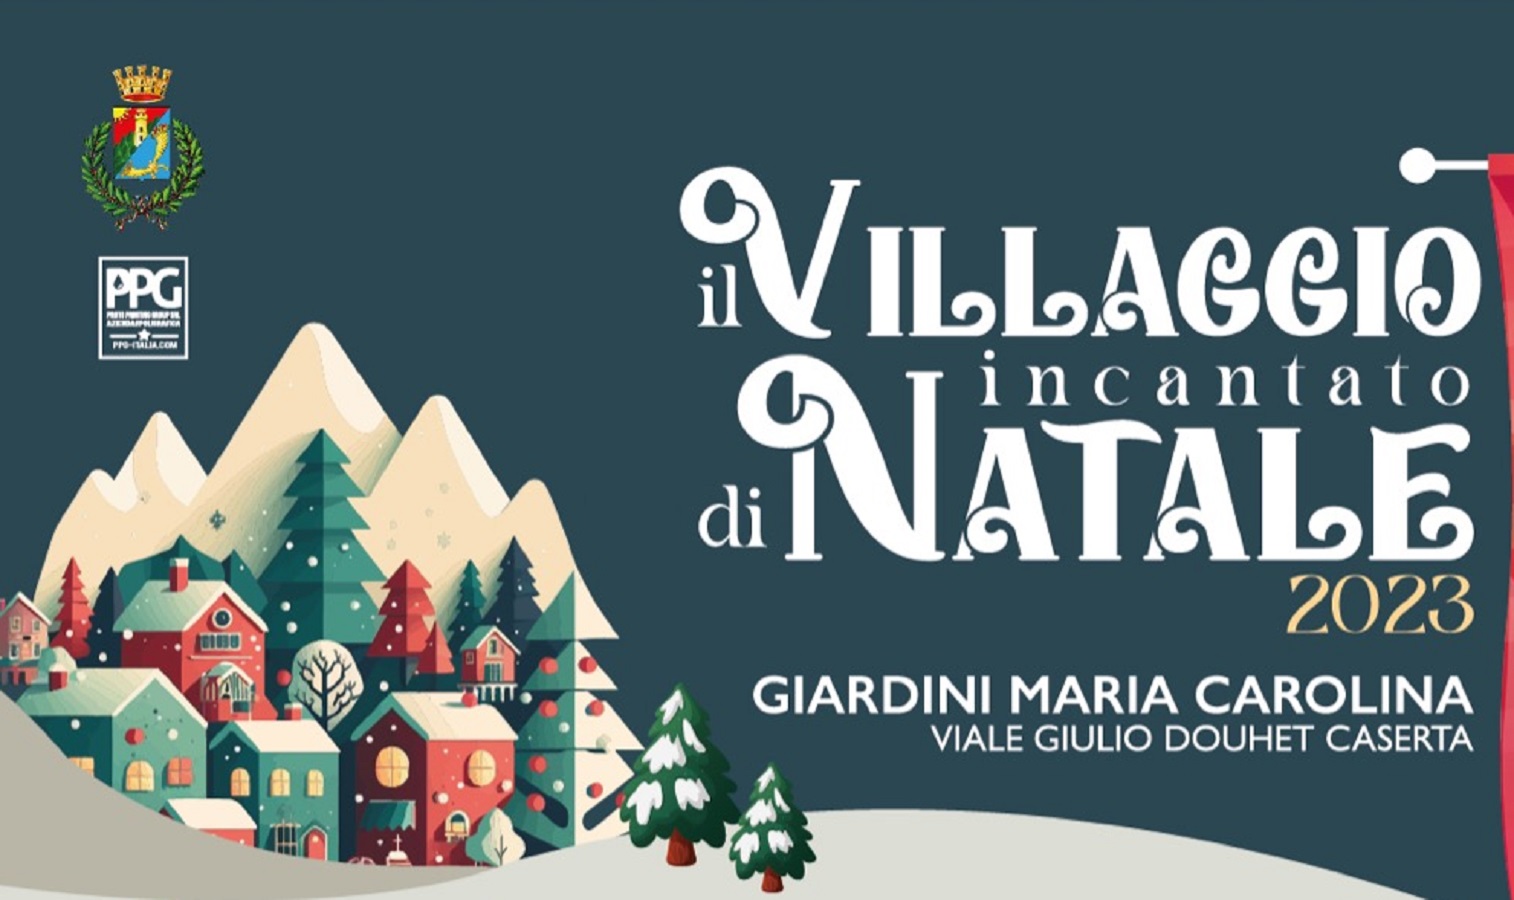 Villaggio incantato di Natale 2023 2024 Giardini Maria Carolina a Caserta.jpg